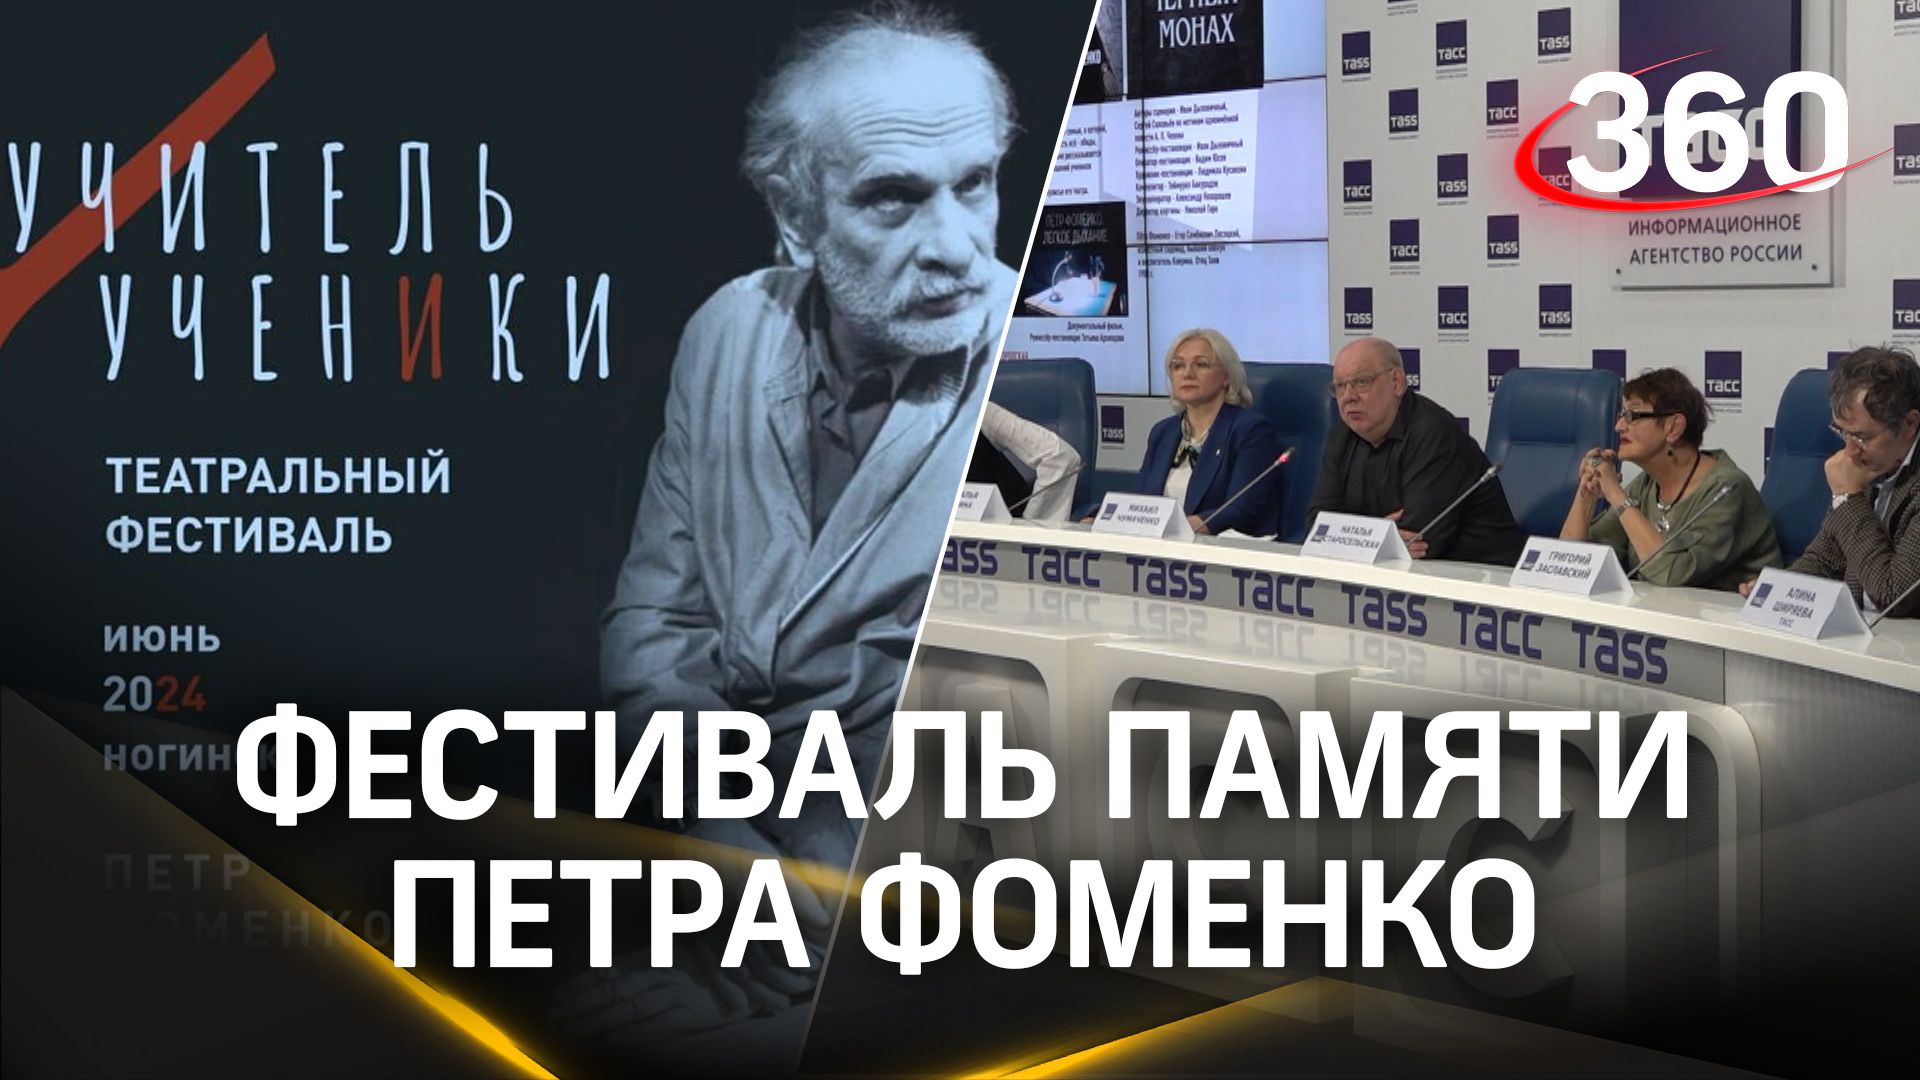 Учитель и ученики: стартовала продажа билетов на фестиваль памяти Петра Фоменко